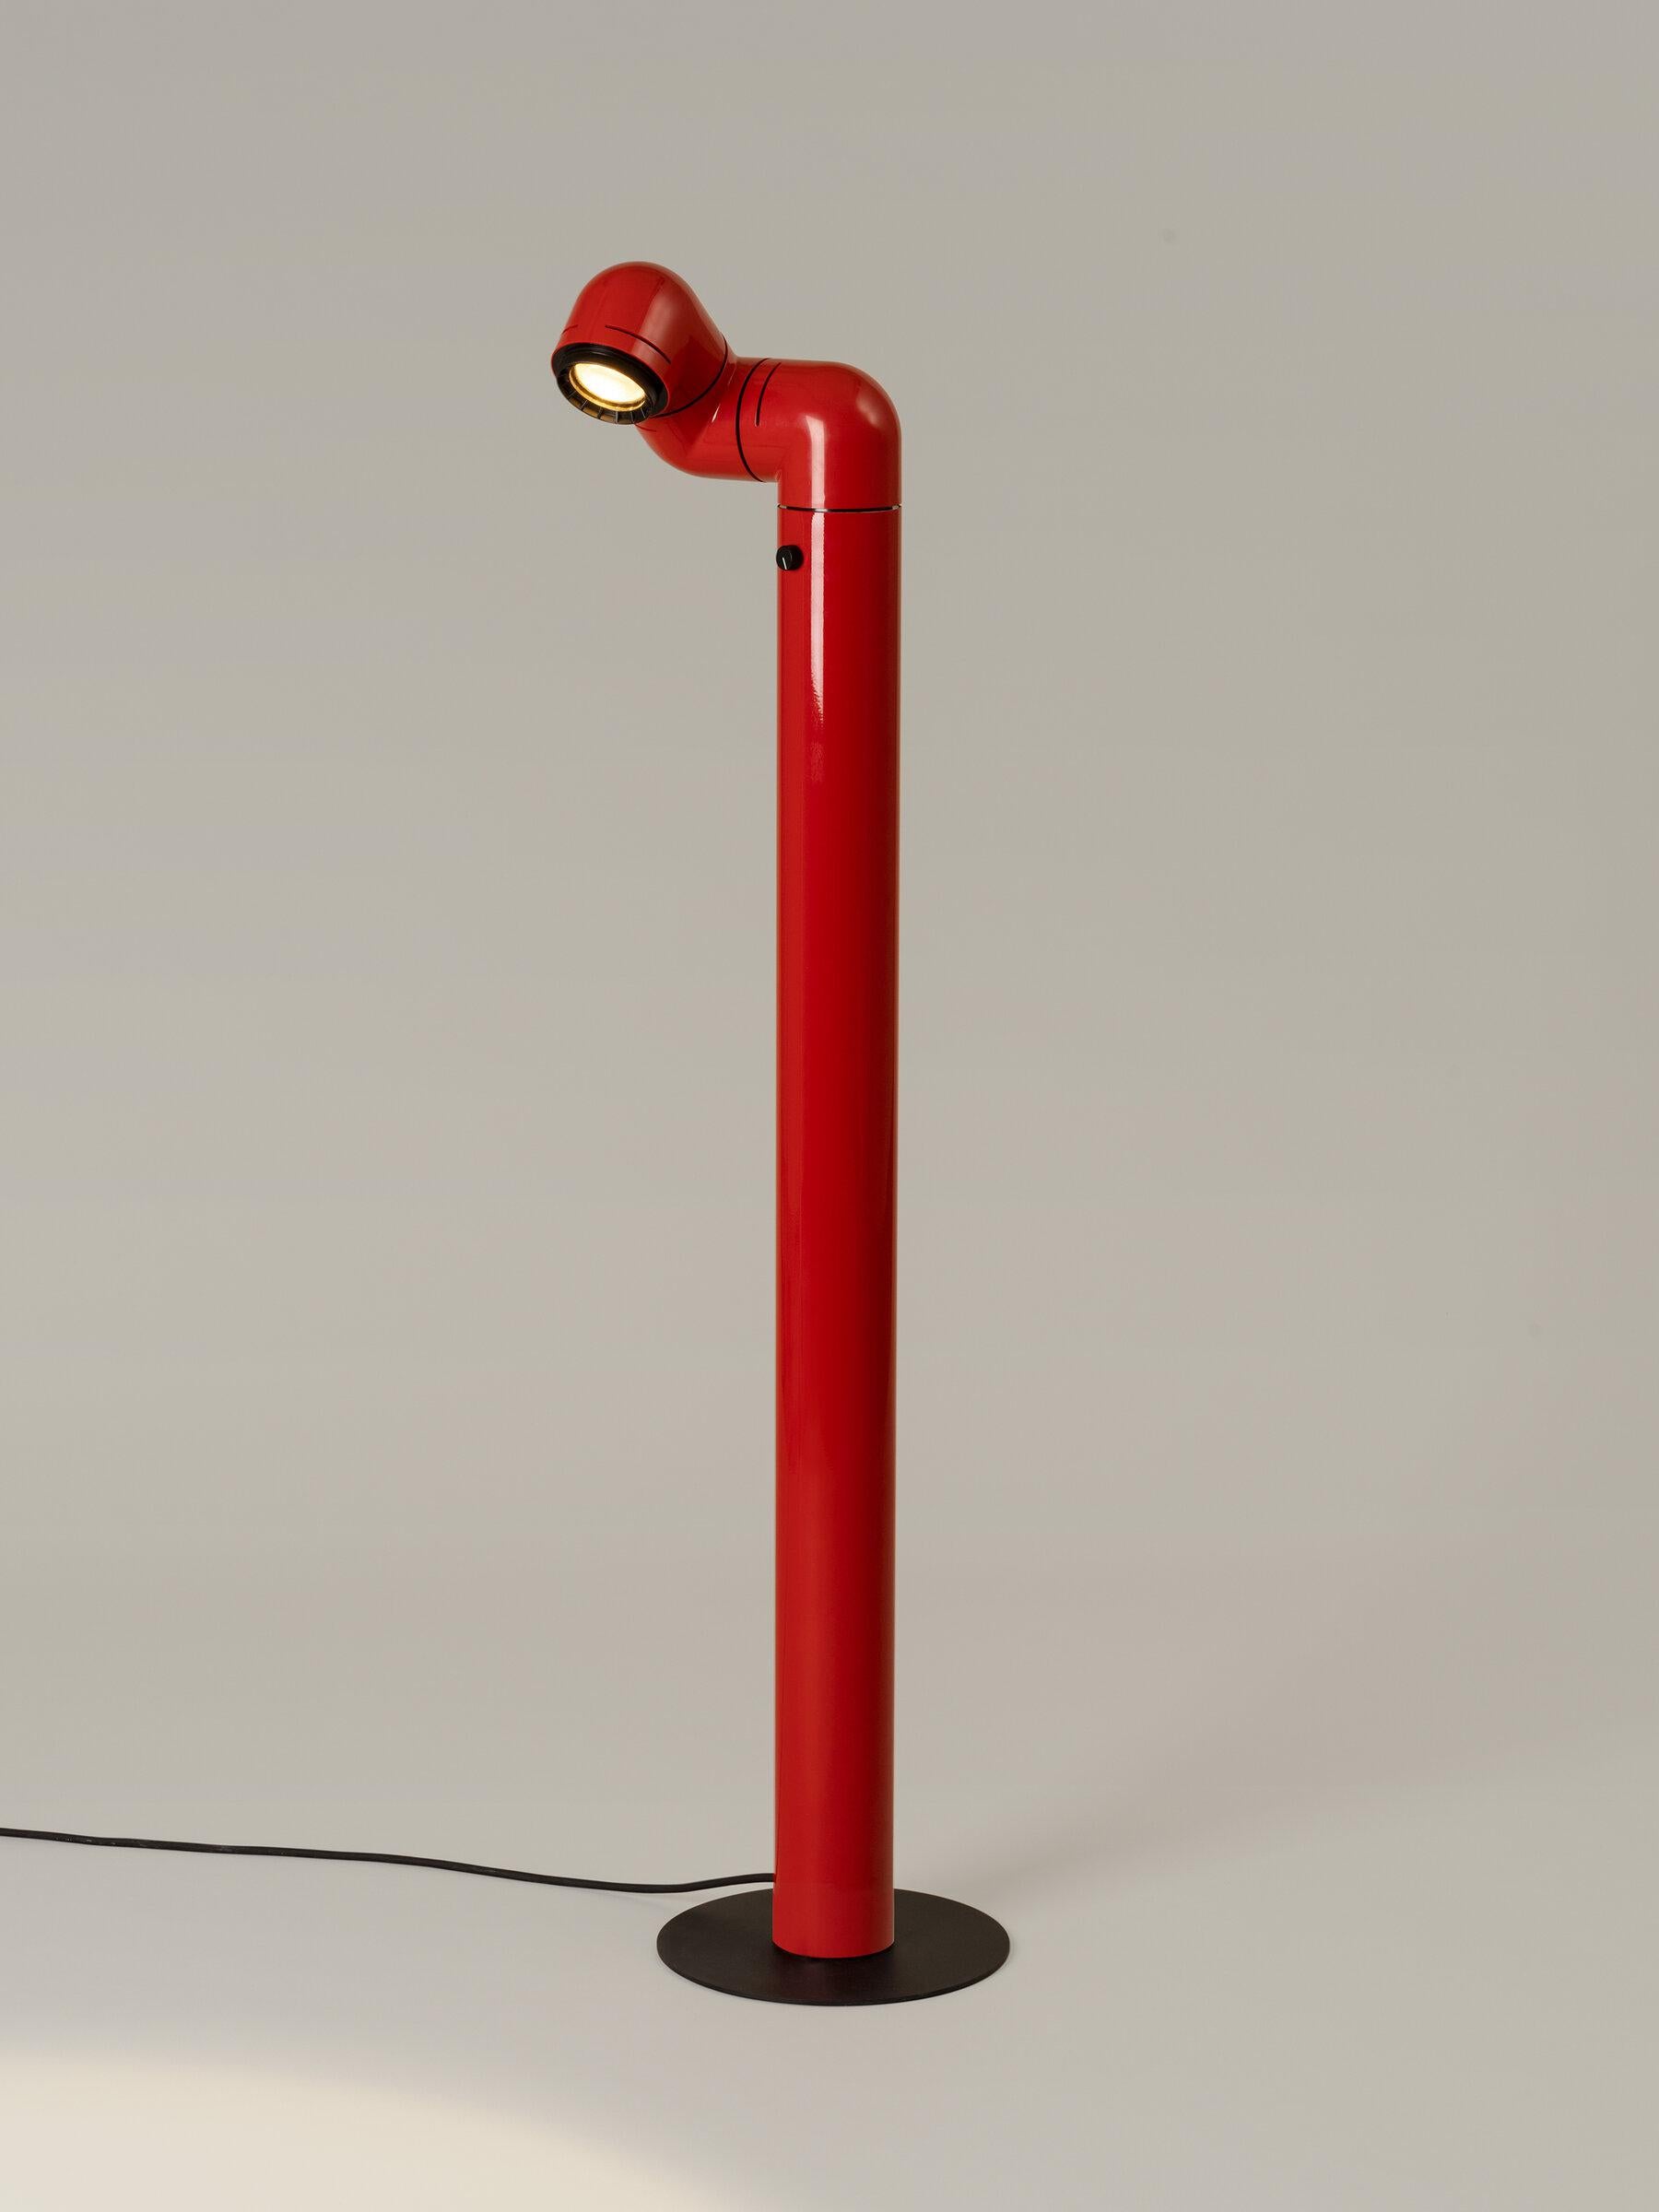 Lampadaire Tatu rouge d'André Ricard
Dimensions : d 23 x l 26 x h 116 cm
Matériaux : Métal, plastique.
Disponible en rouge ou en blanc.

Cette lampe conviviale, une étape révolutionnaire dans la conception, est essentielle dans n'importe quel